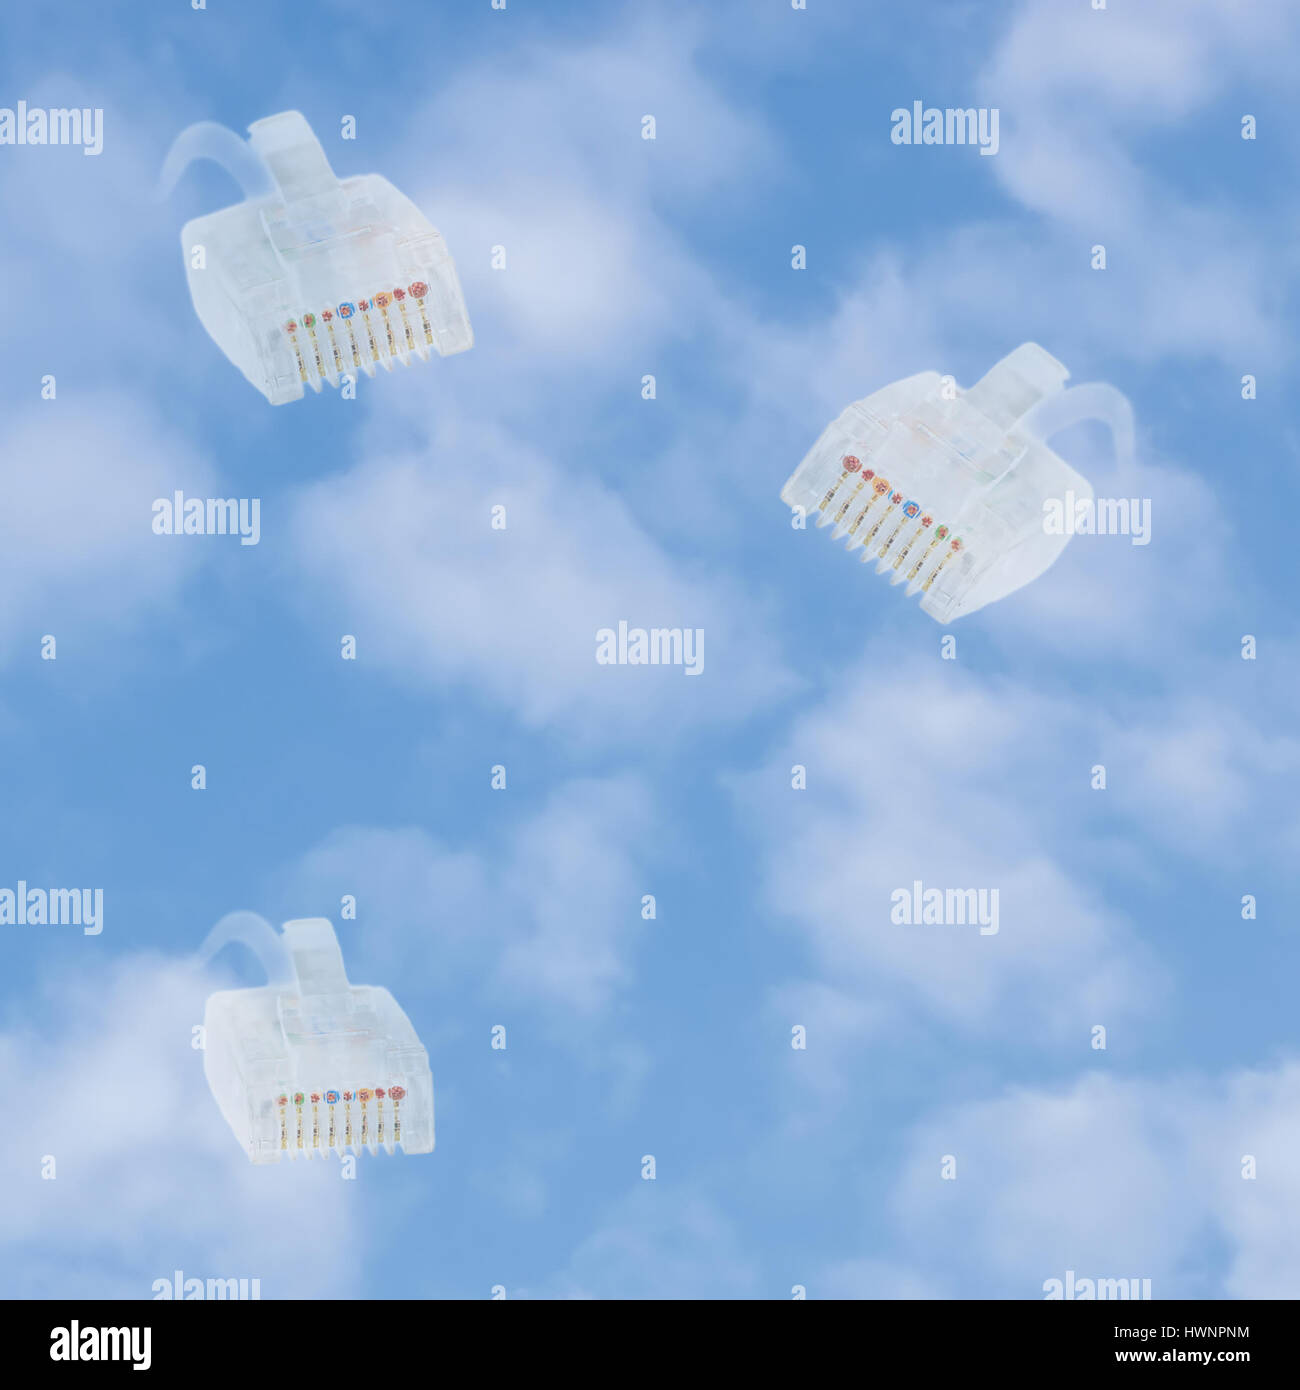 Cloud-computing-Speicher Daten Sicherheit Konzept Metapher, leuchtend blaue Sommer Himmel Wolkengebilde, vertikalen Hintergrund, mehrere Ethernet-lan-Kabel, Netzwerkeinstellungen Stockfoto